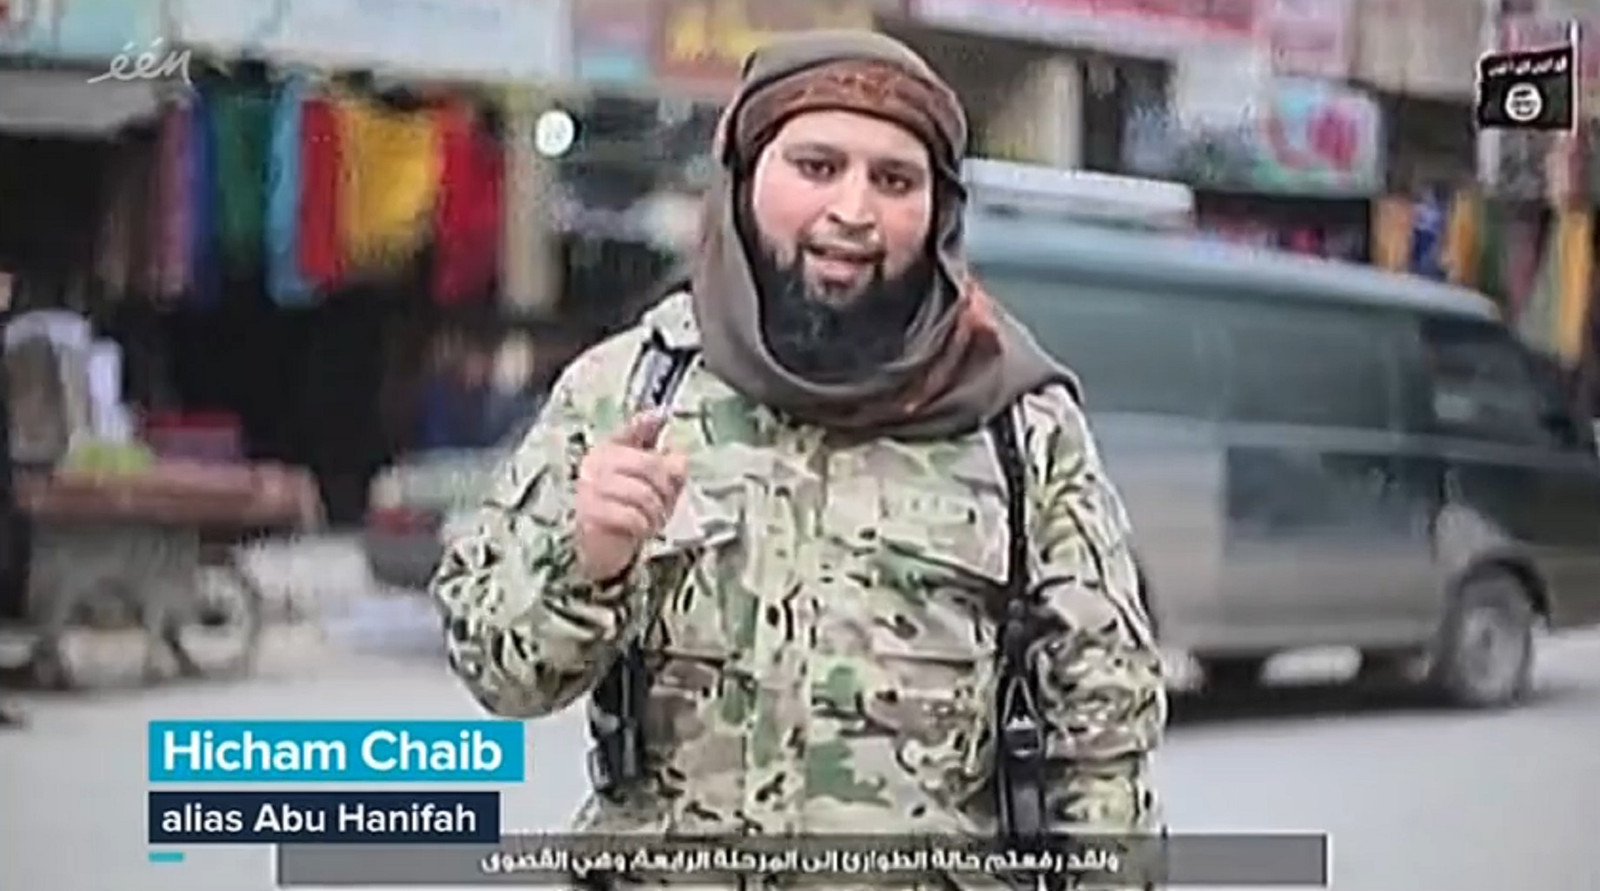 Chaib est une figure bien connue du djihadisme en Belgique. Parti en 2012 pour rallier les rangs de Daech, il a connu une ascension fulgurante au sein de l'organisation terroriste.